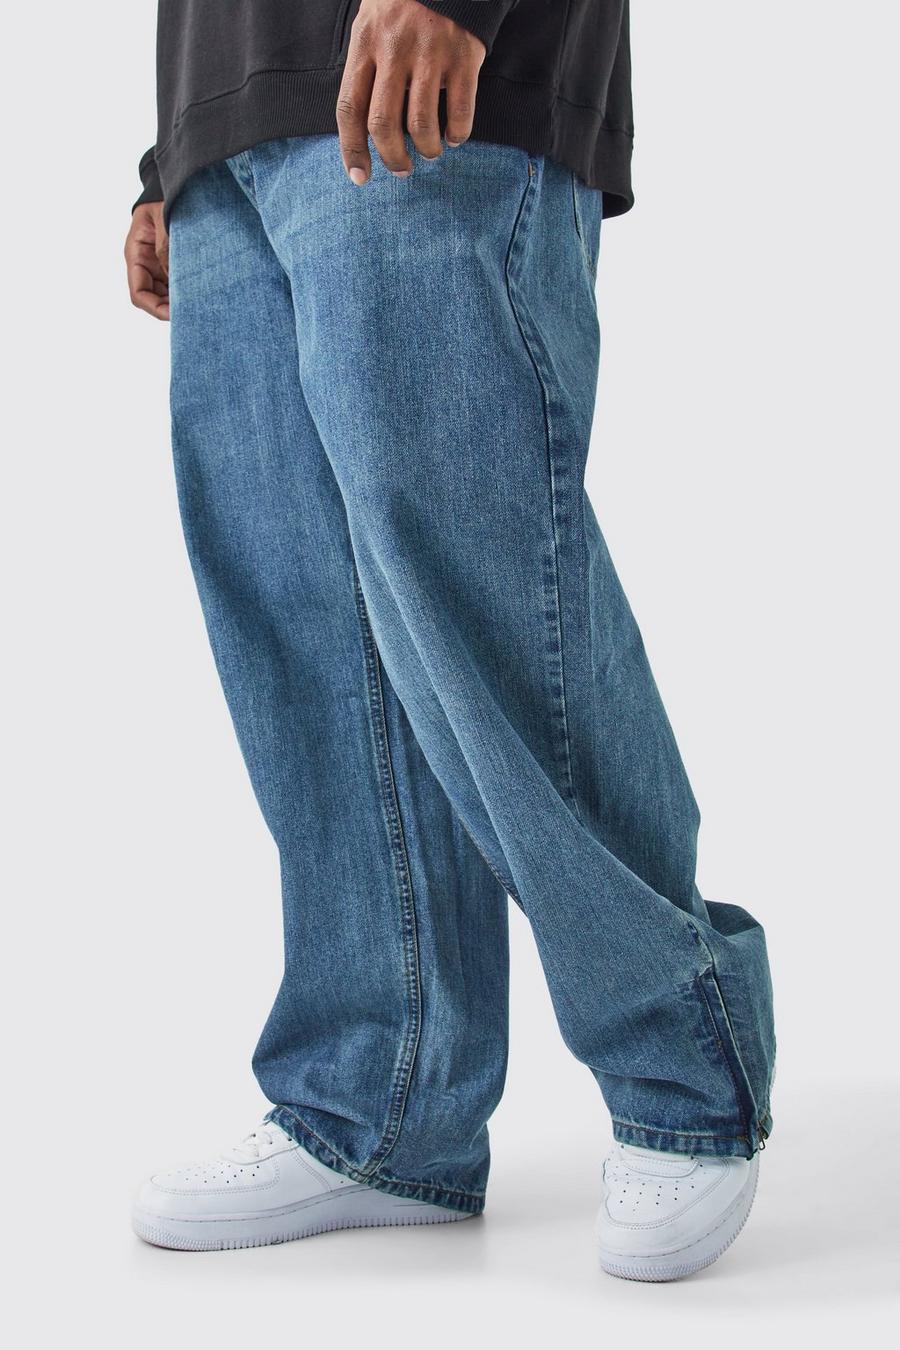 Jeans rilassati Plus Size in denim rigido con zip sul fondo, Antique blue image number 1